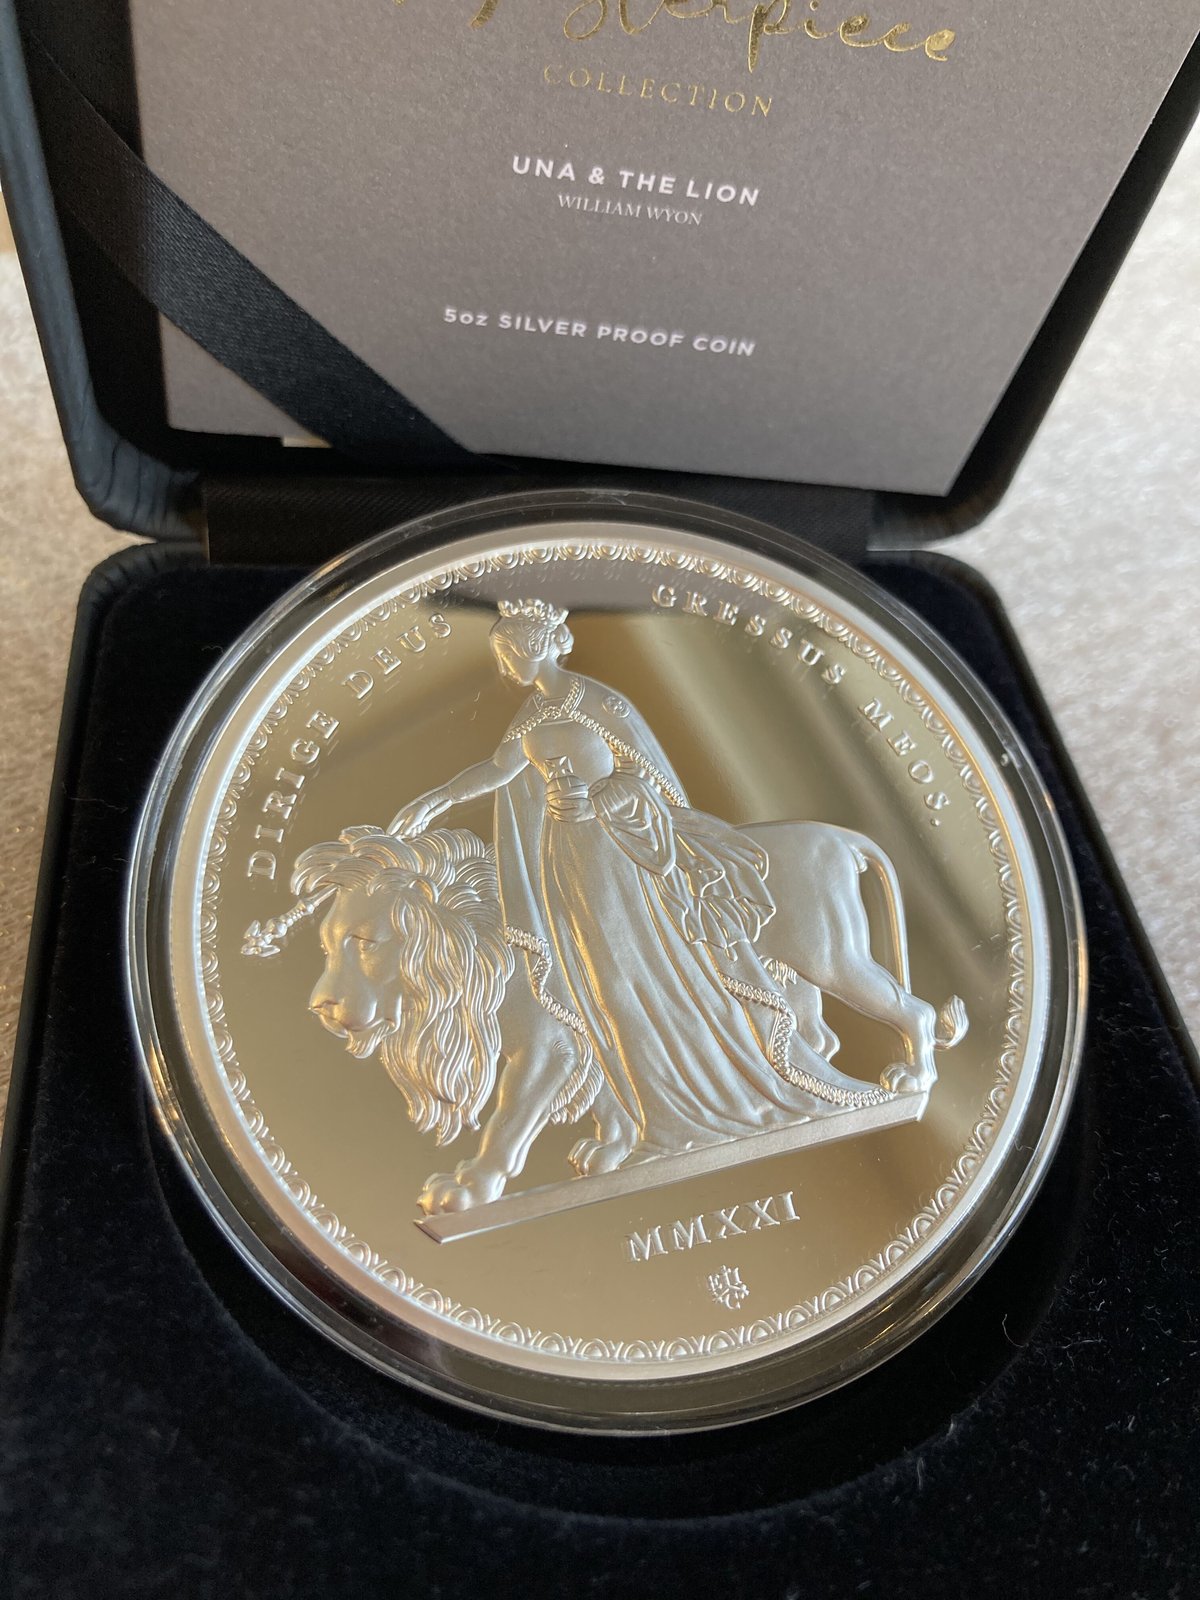 ウナとライオン 2021年 セントヘレナ マスターピース 5オンス 銀貨 シルバー プルーフコイン 発行300枚